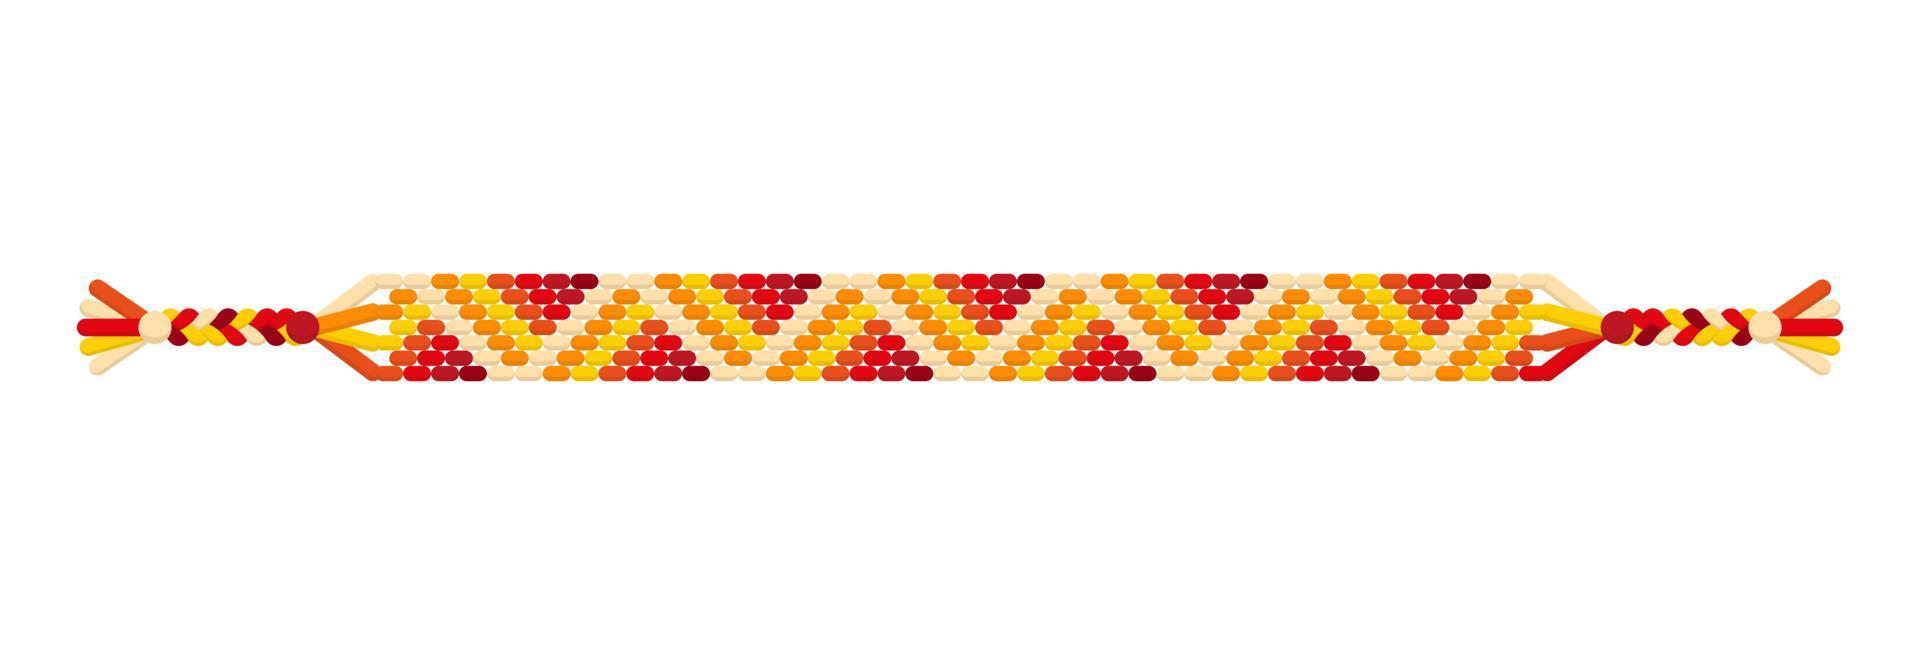 Vektor buntes handgefertigtes Hippie-Freundschaftsarmband aus roten, orangefarbenen und gelben Fäden.